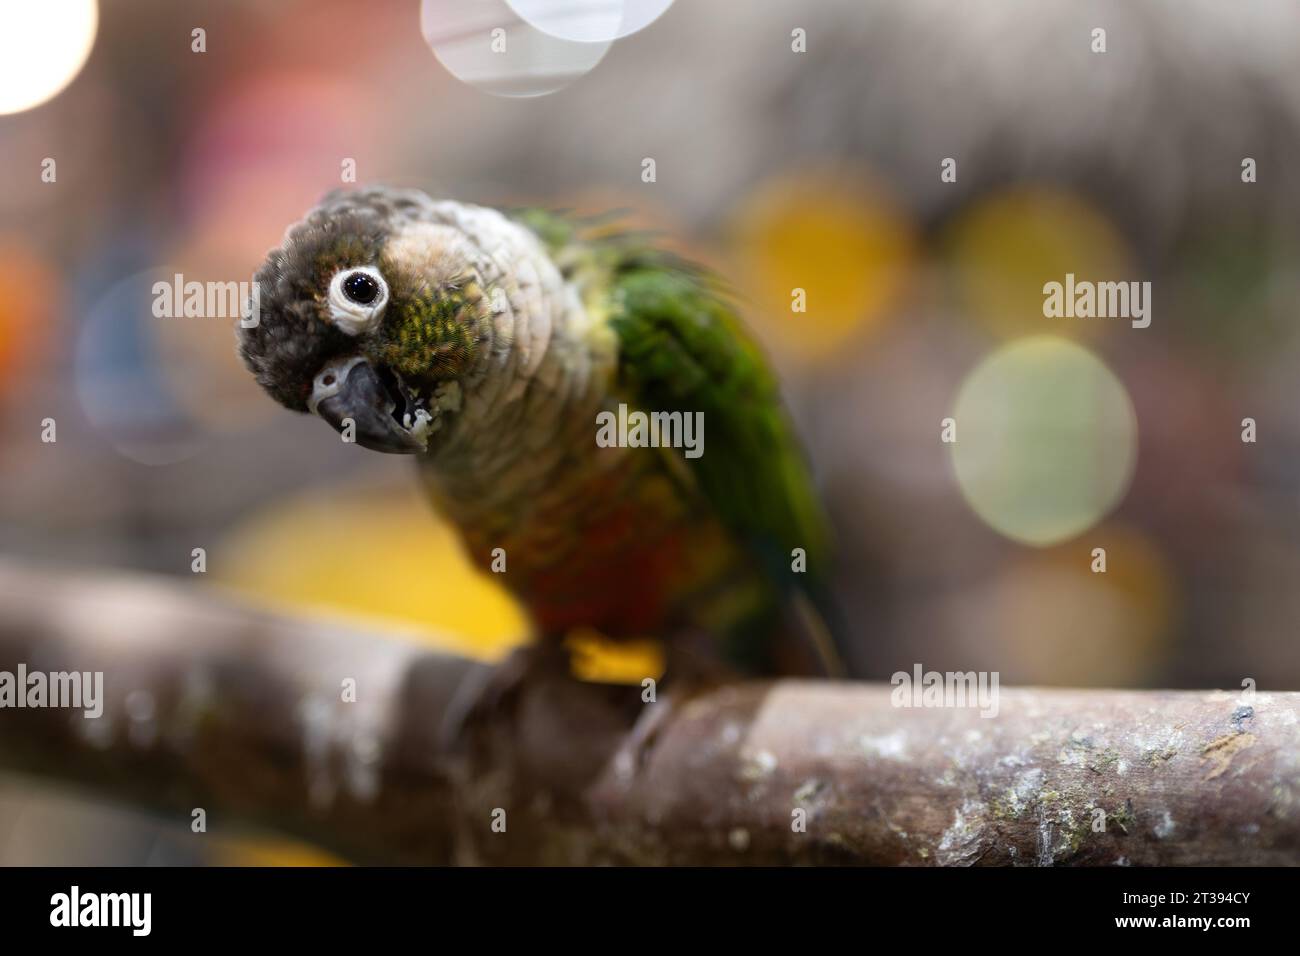 Primo piano di una conura dalle guance verdi che guarda la fotocamera. Il carino pappagallo inclina la testa e guarda la fotocamera. Foto Stock